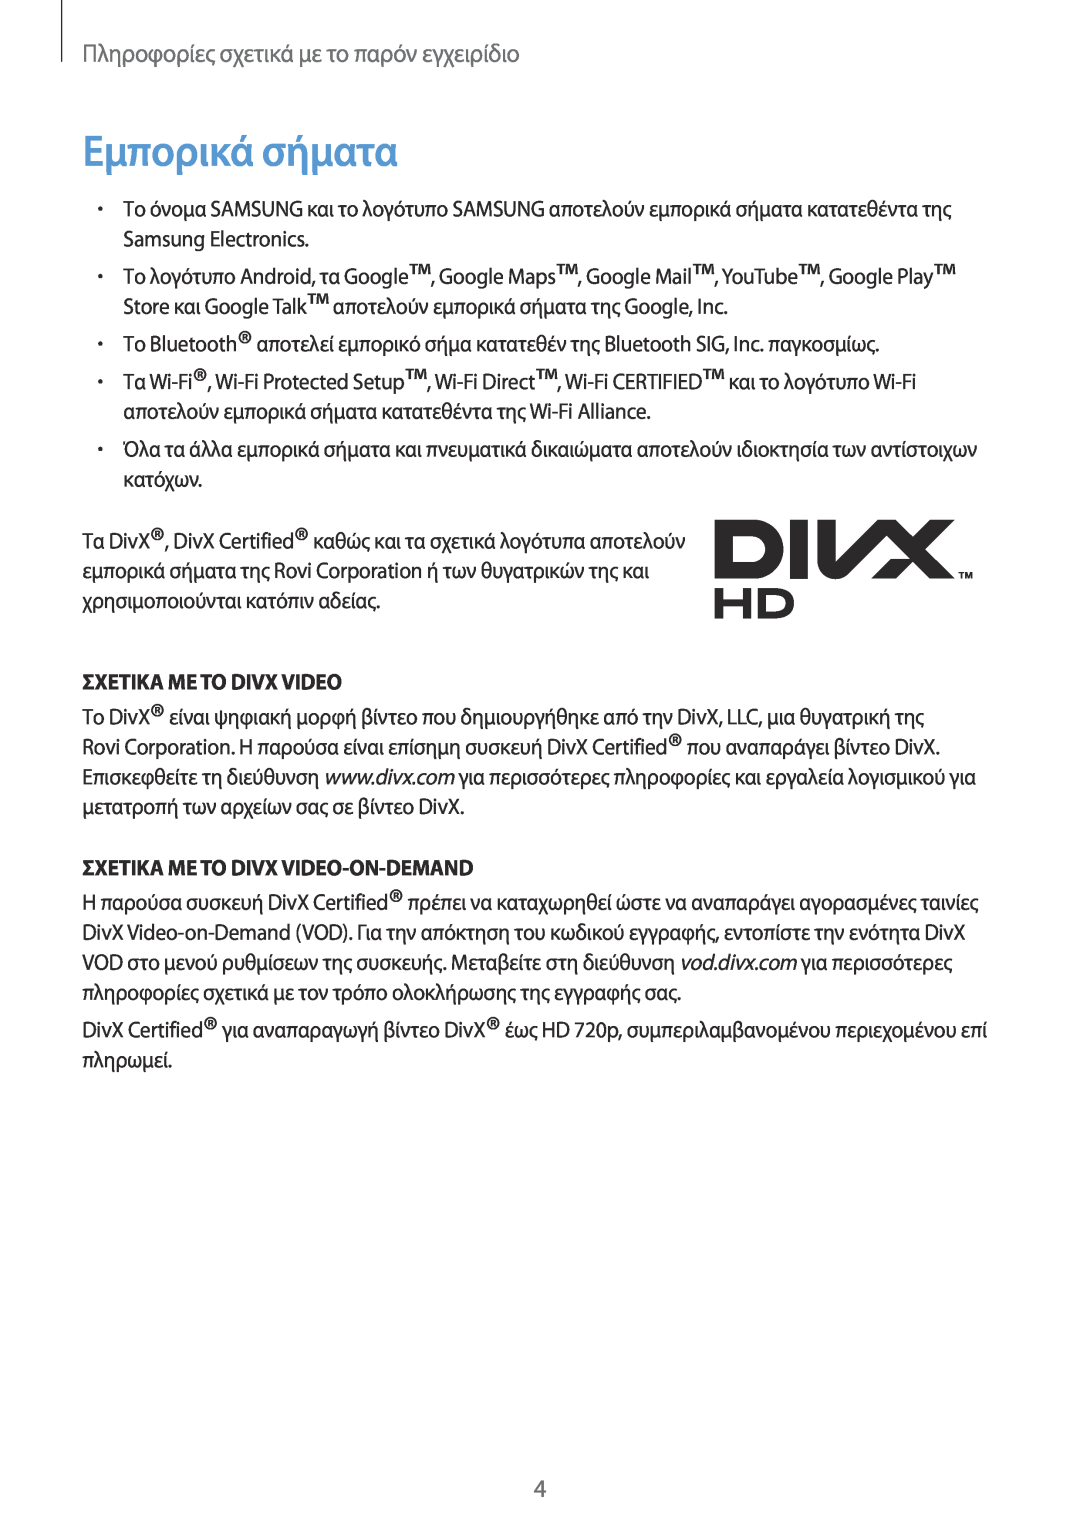 Samsung GT-N7100RWDCYV Εμπορικά σήματα, Σχετικα Με Το Divx Video-On-Demand, Πληροφορίες σχετικά με το παρόν εγχειρίδιο 